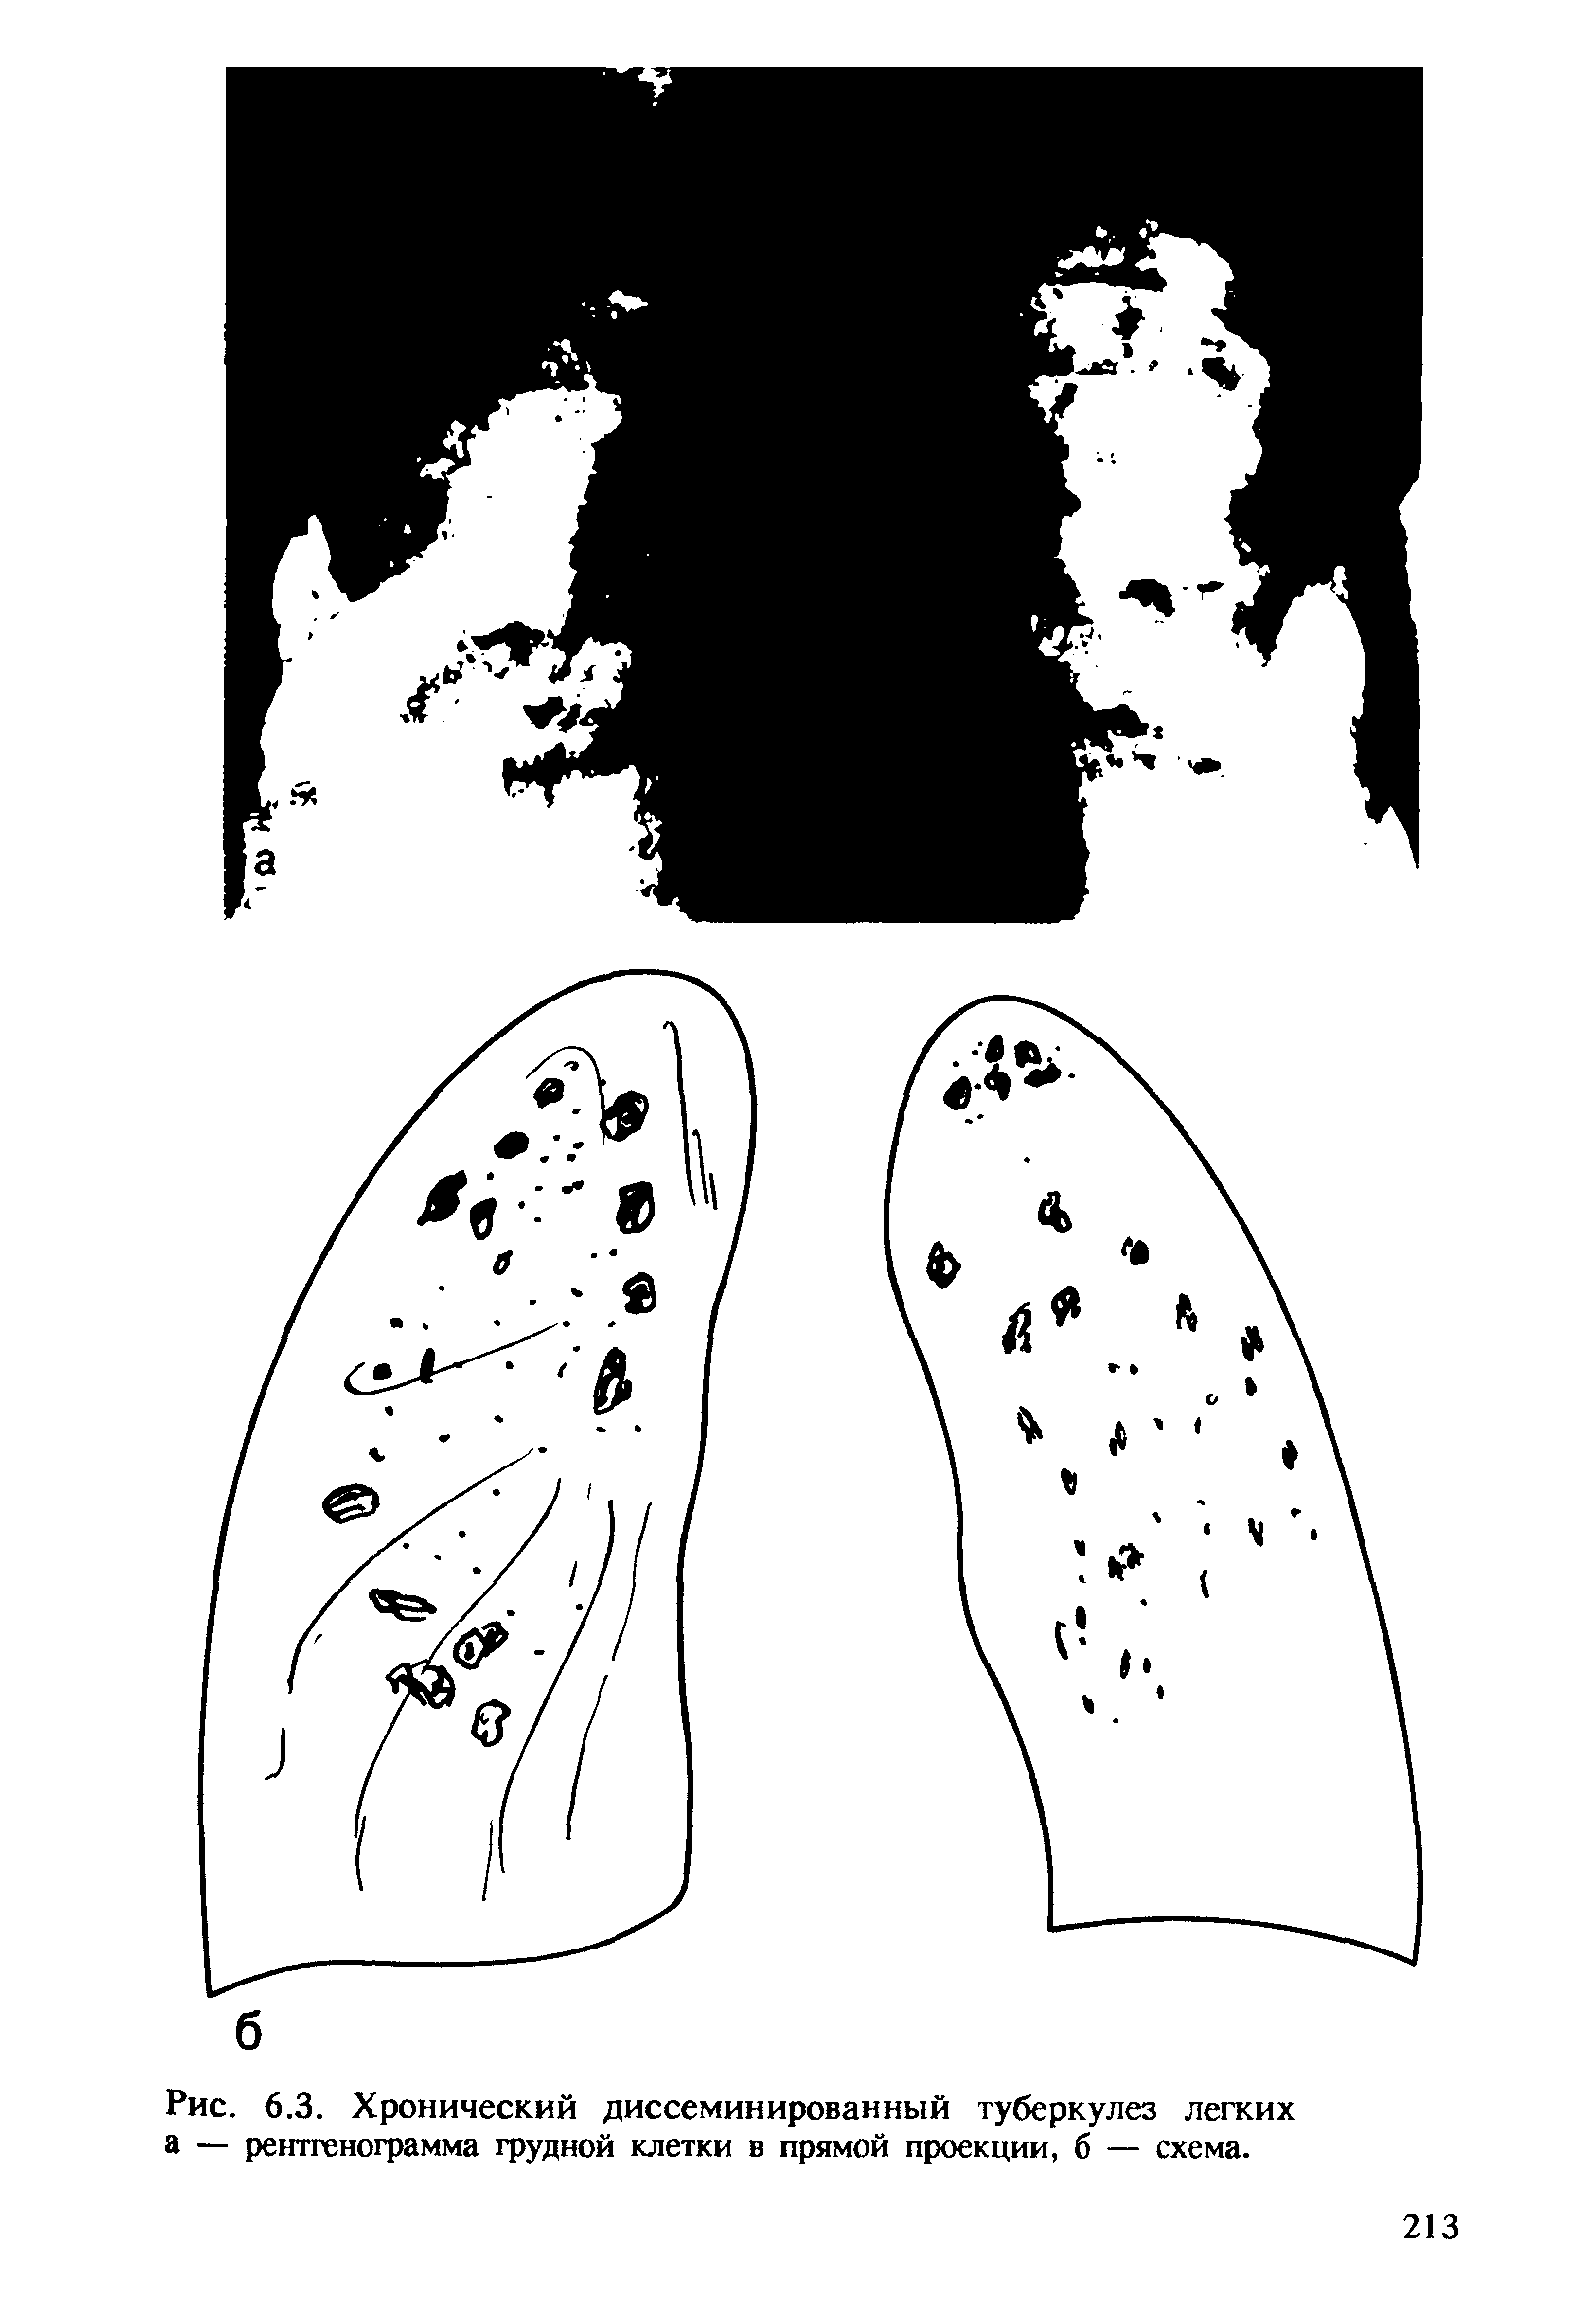 Рис. 6.3. Хронический диссеминированный туберкулез легких а — рентгенограмма грудной клетки в прямой проекции, б — схема.